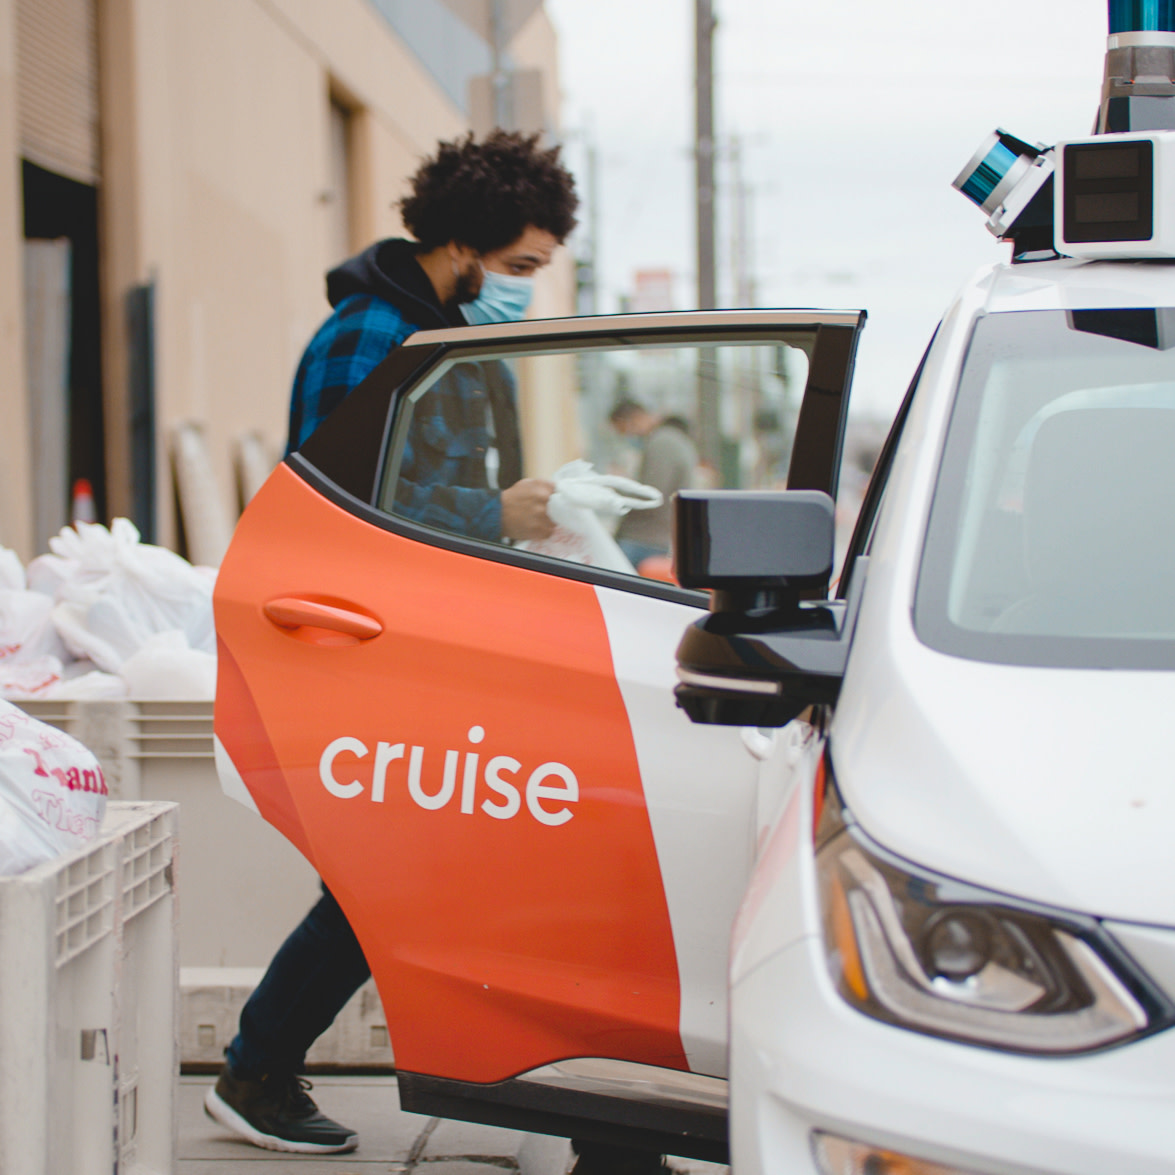 cruise driverless car app